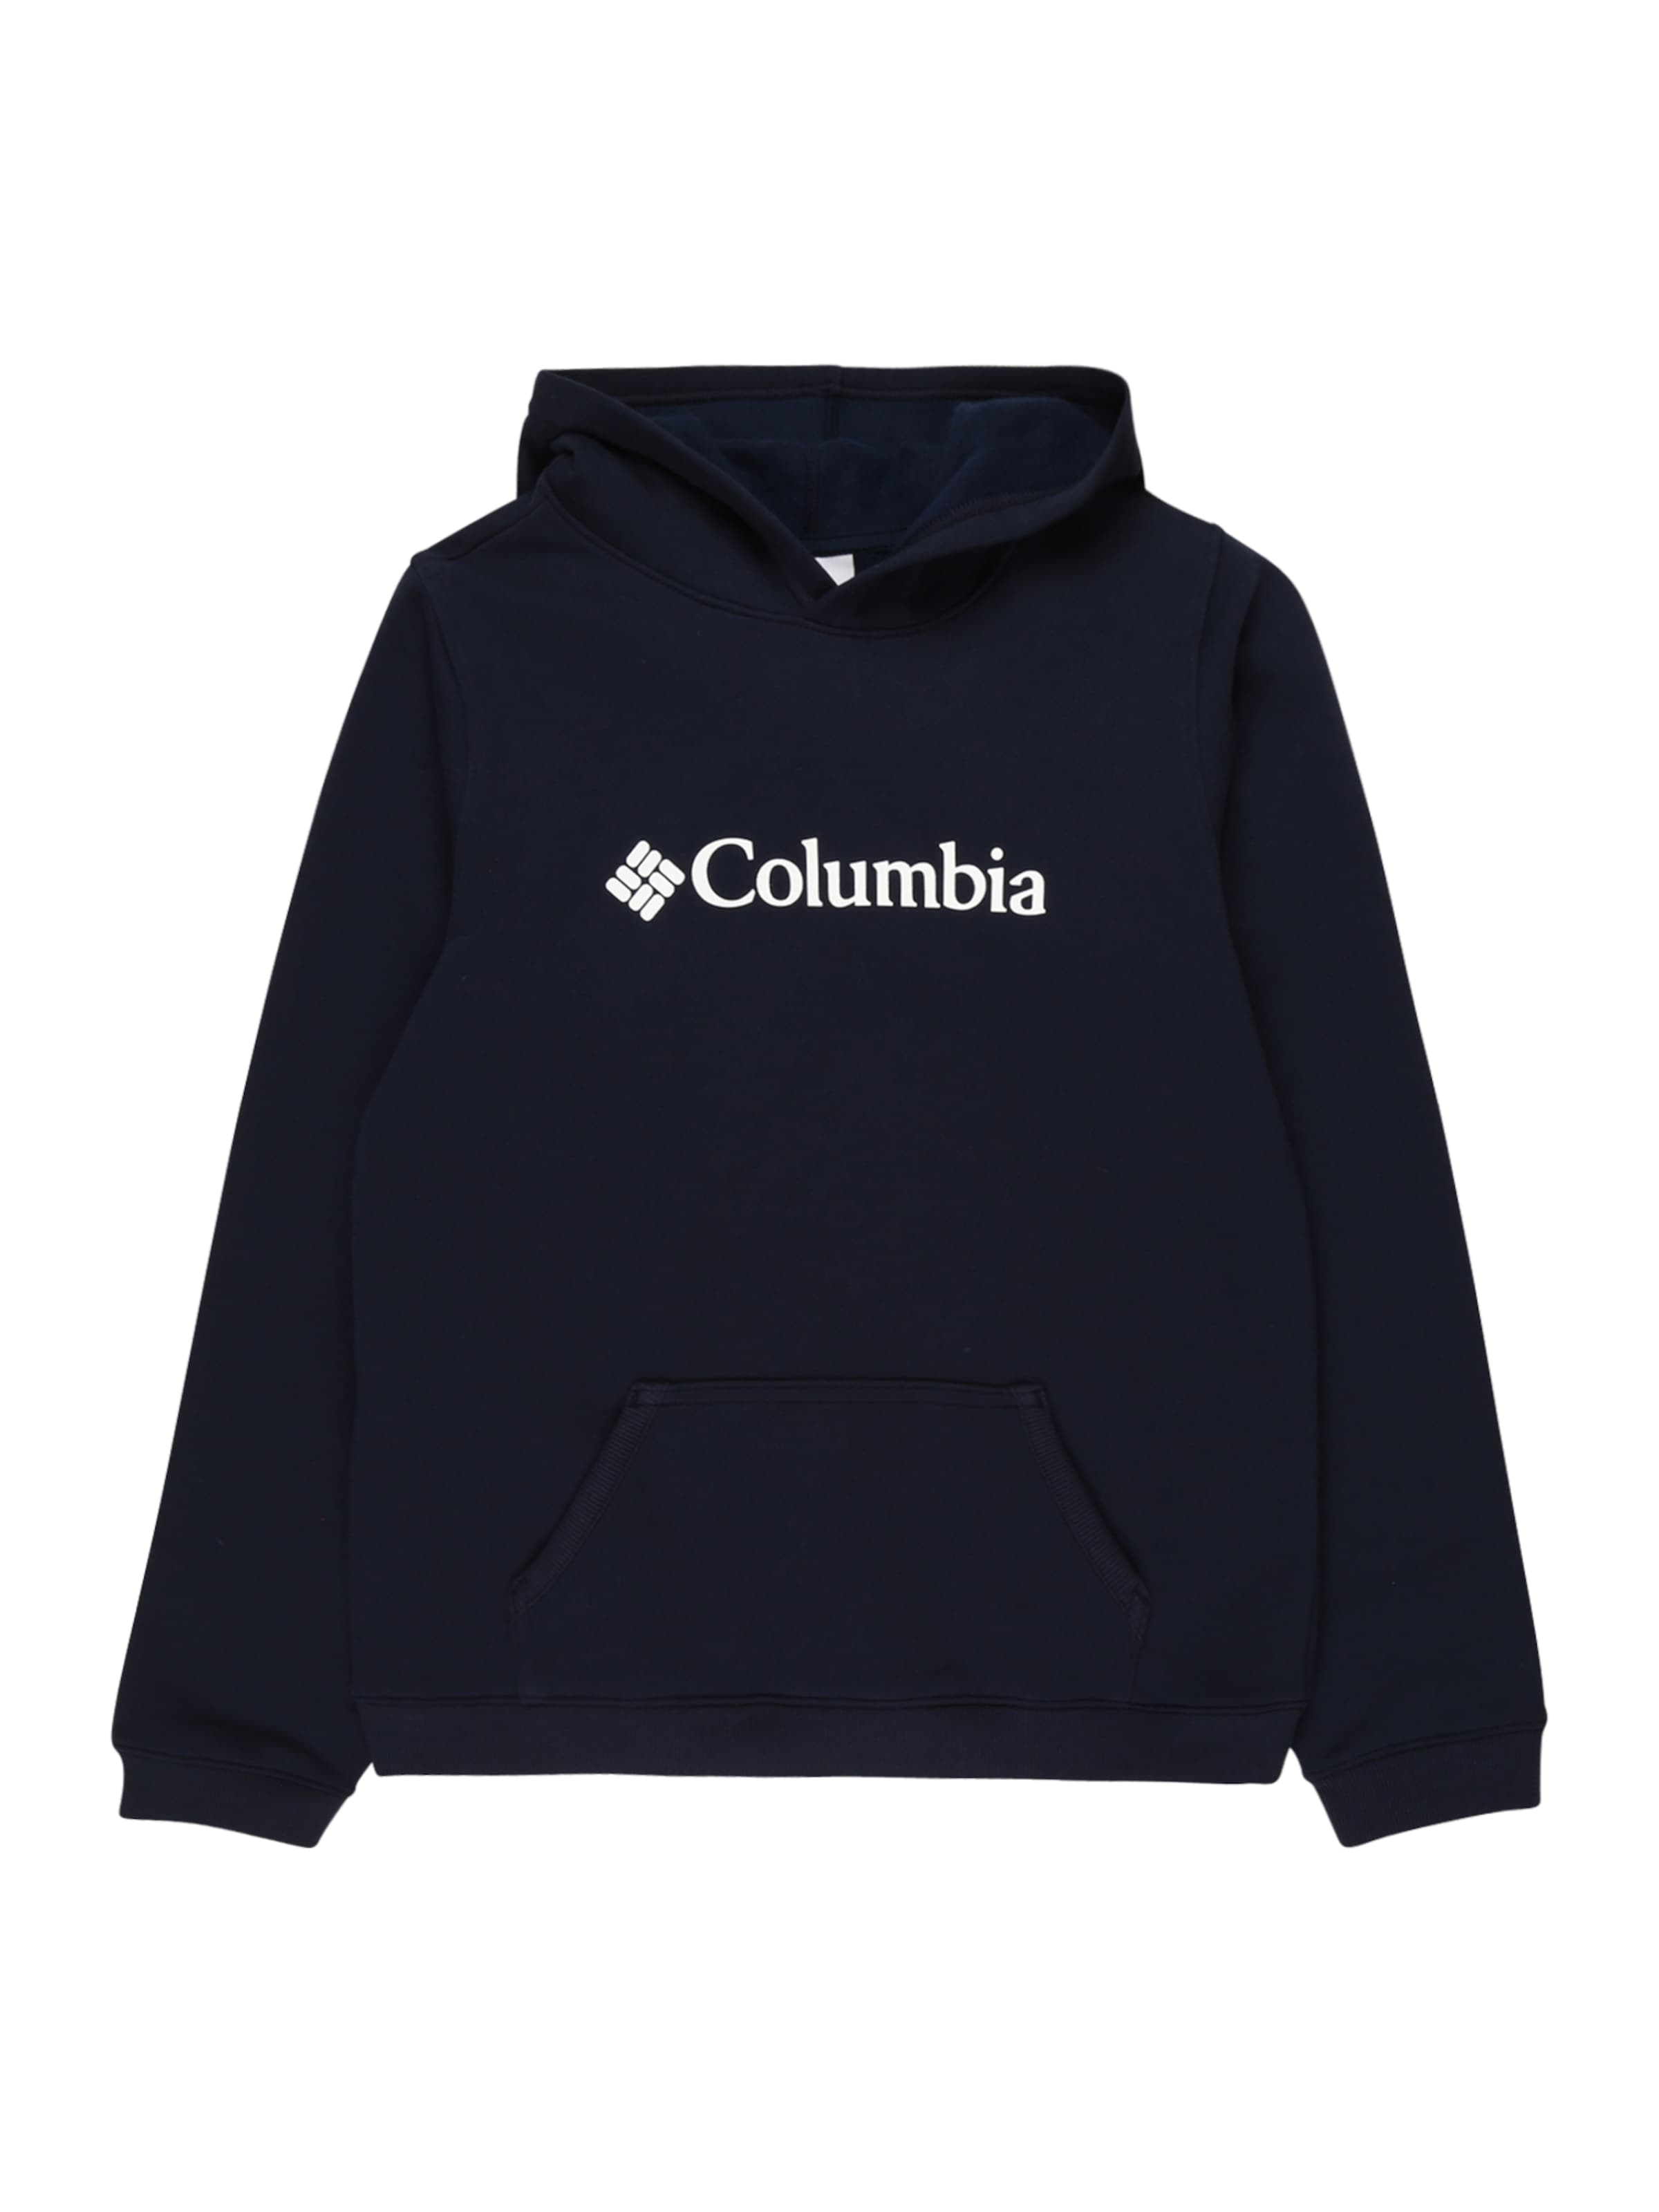 Kinder Kids (Gr. 92-140) COLUMBIA Sweatshirt in Navy - LS45143